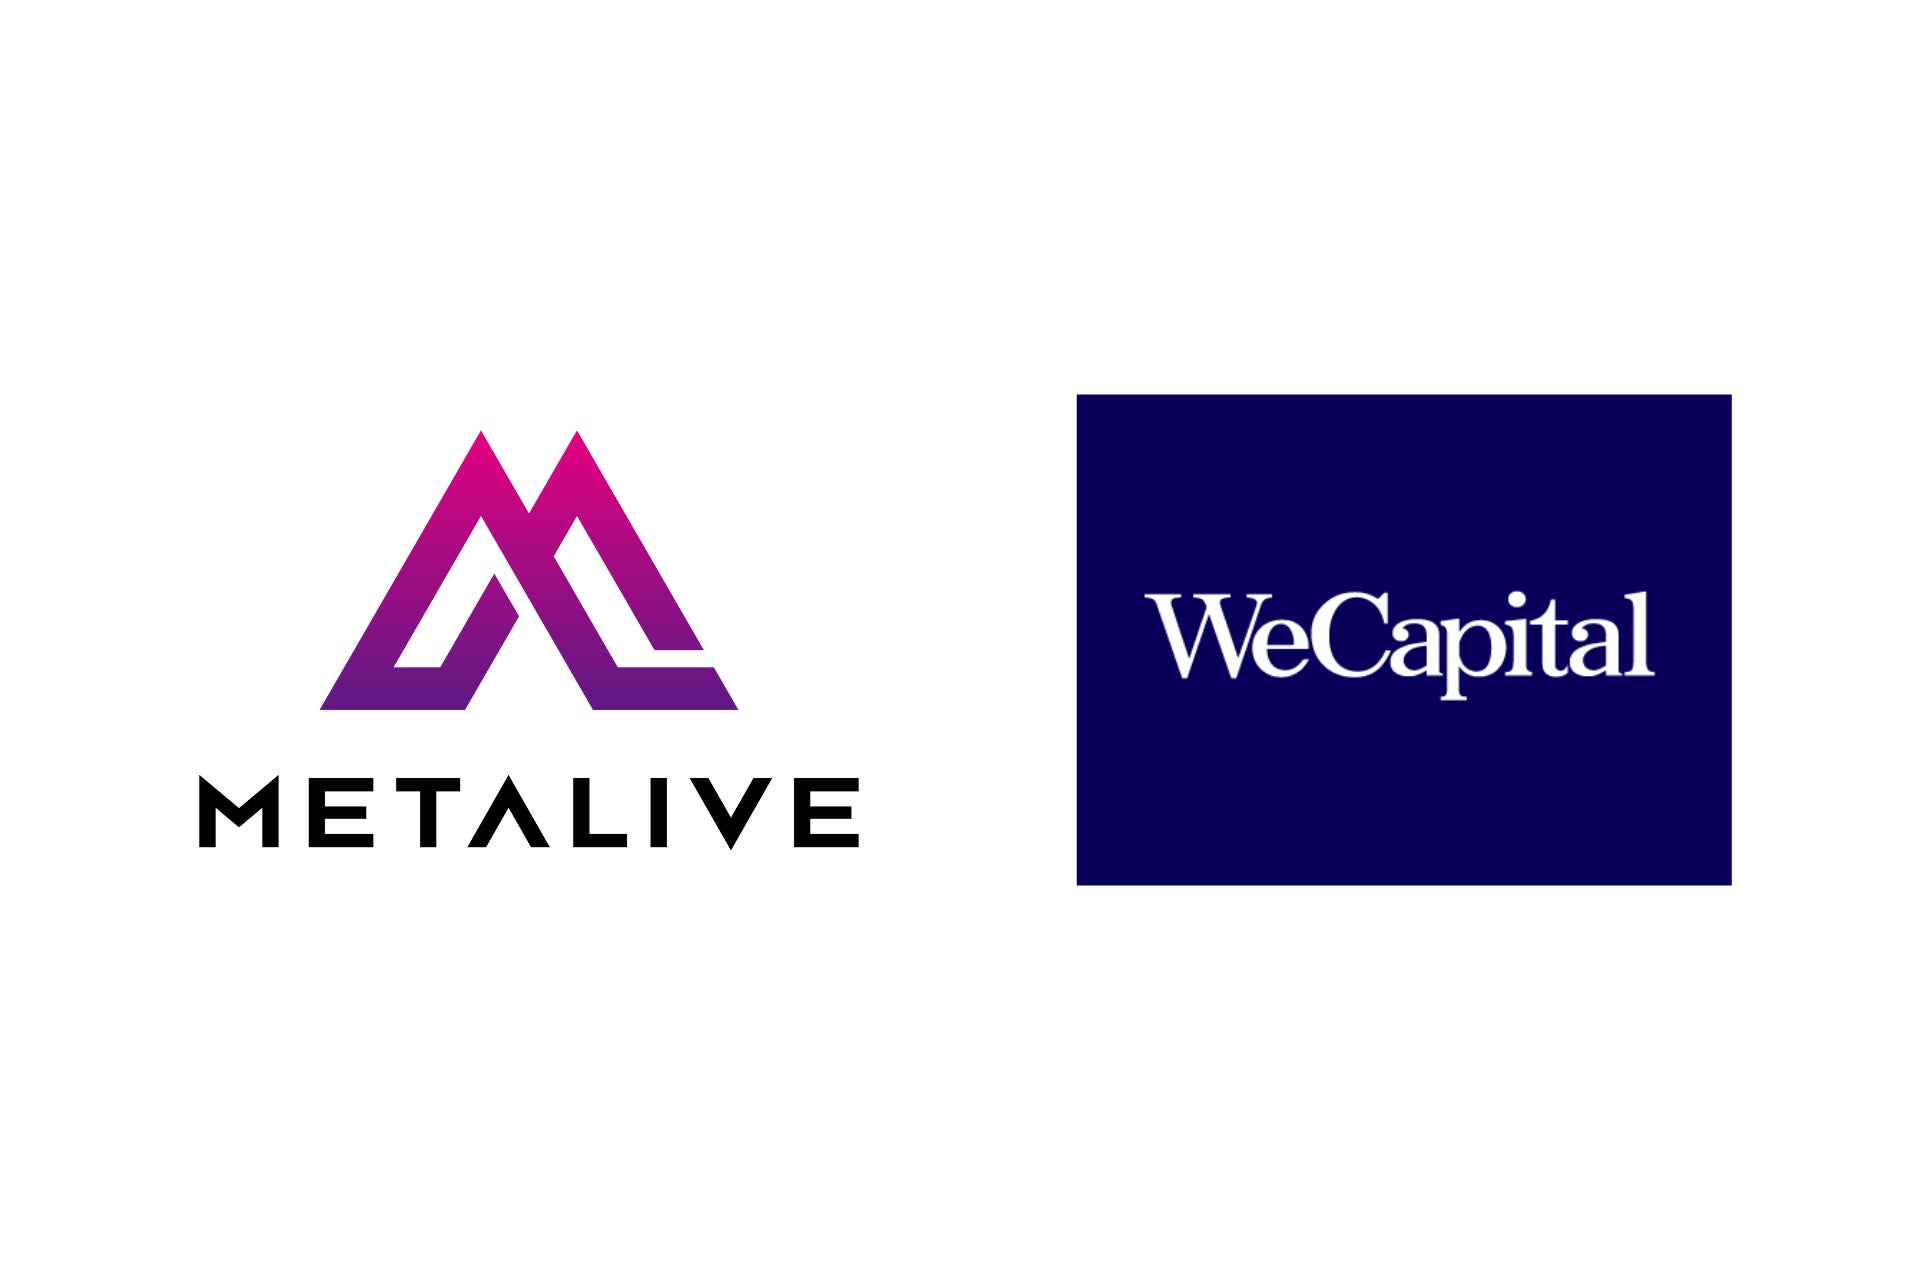 デジタルメディア『METALIVE』を運営するPRIME HOLDINGS株式会社、投資・配当型クラウドファンディング「ヤマワケ」をローンチするWeCapital株式会社と業務提携